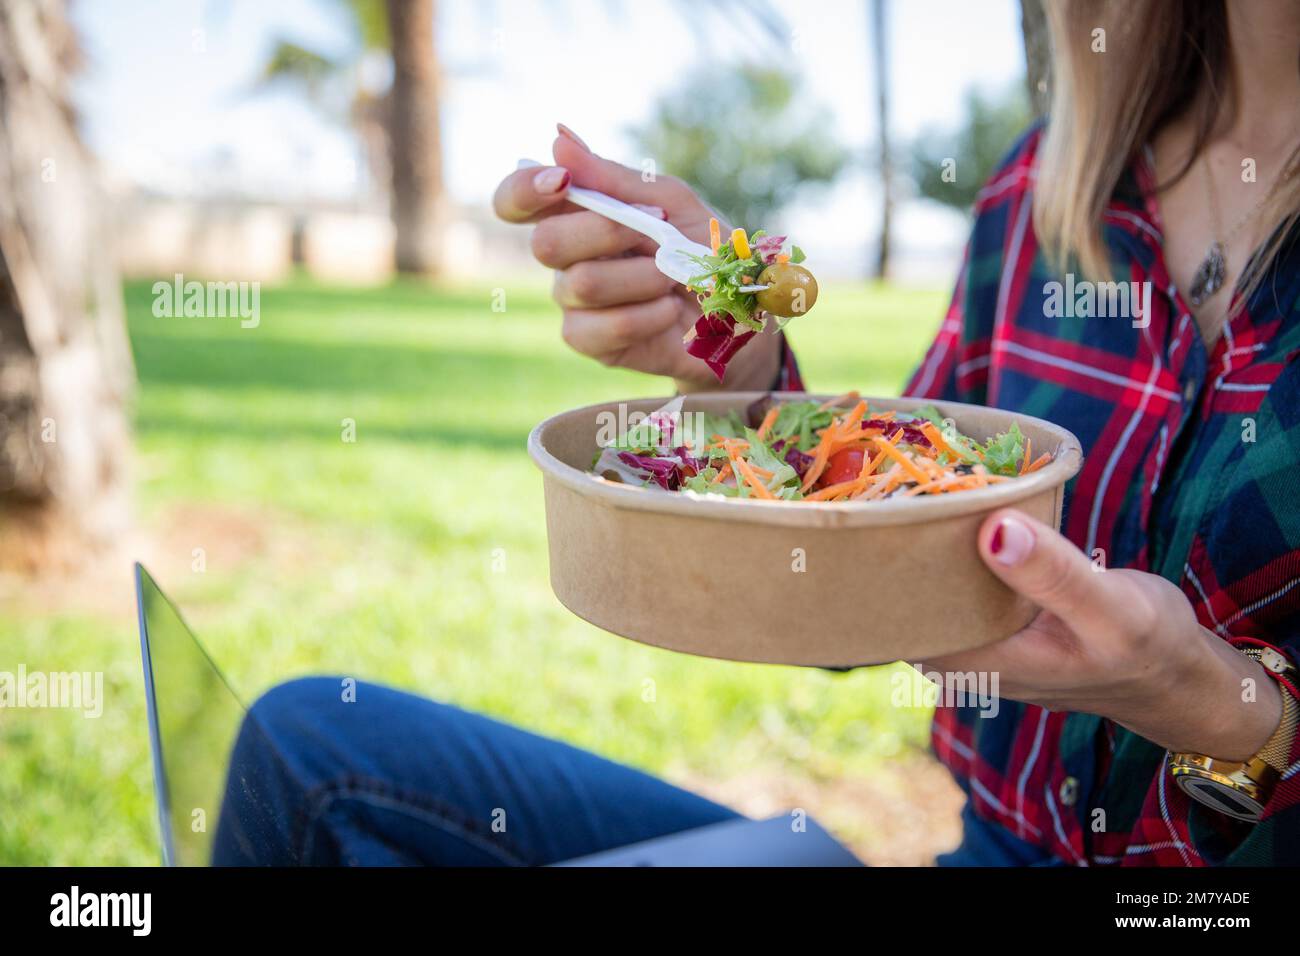 Primo piano di un'insalata mangiata da una ragazza seduta in un parco pubblico, cibo vegano, stile di vita sano Foto Stock